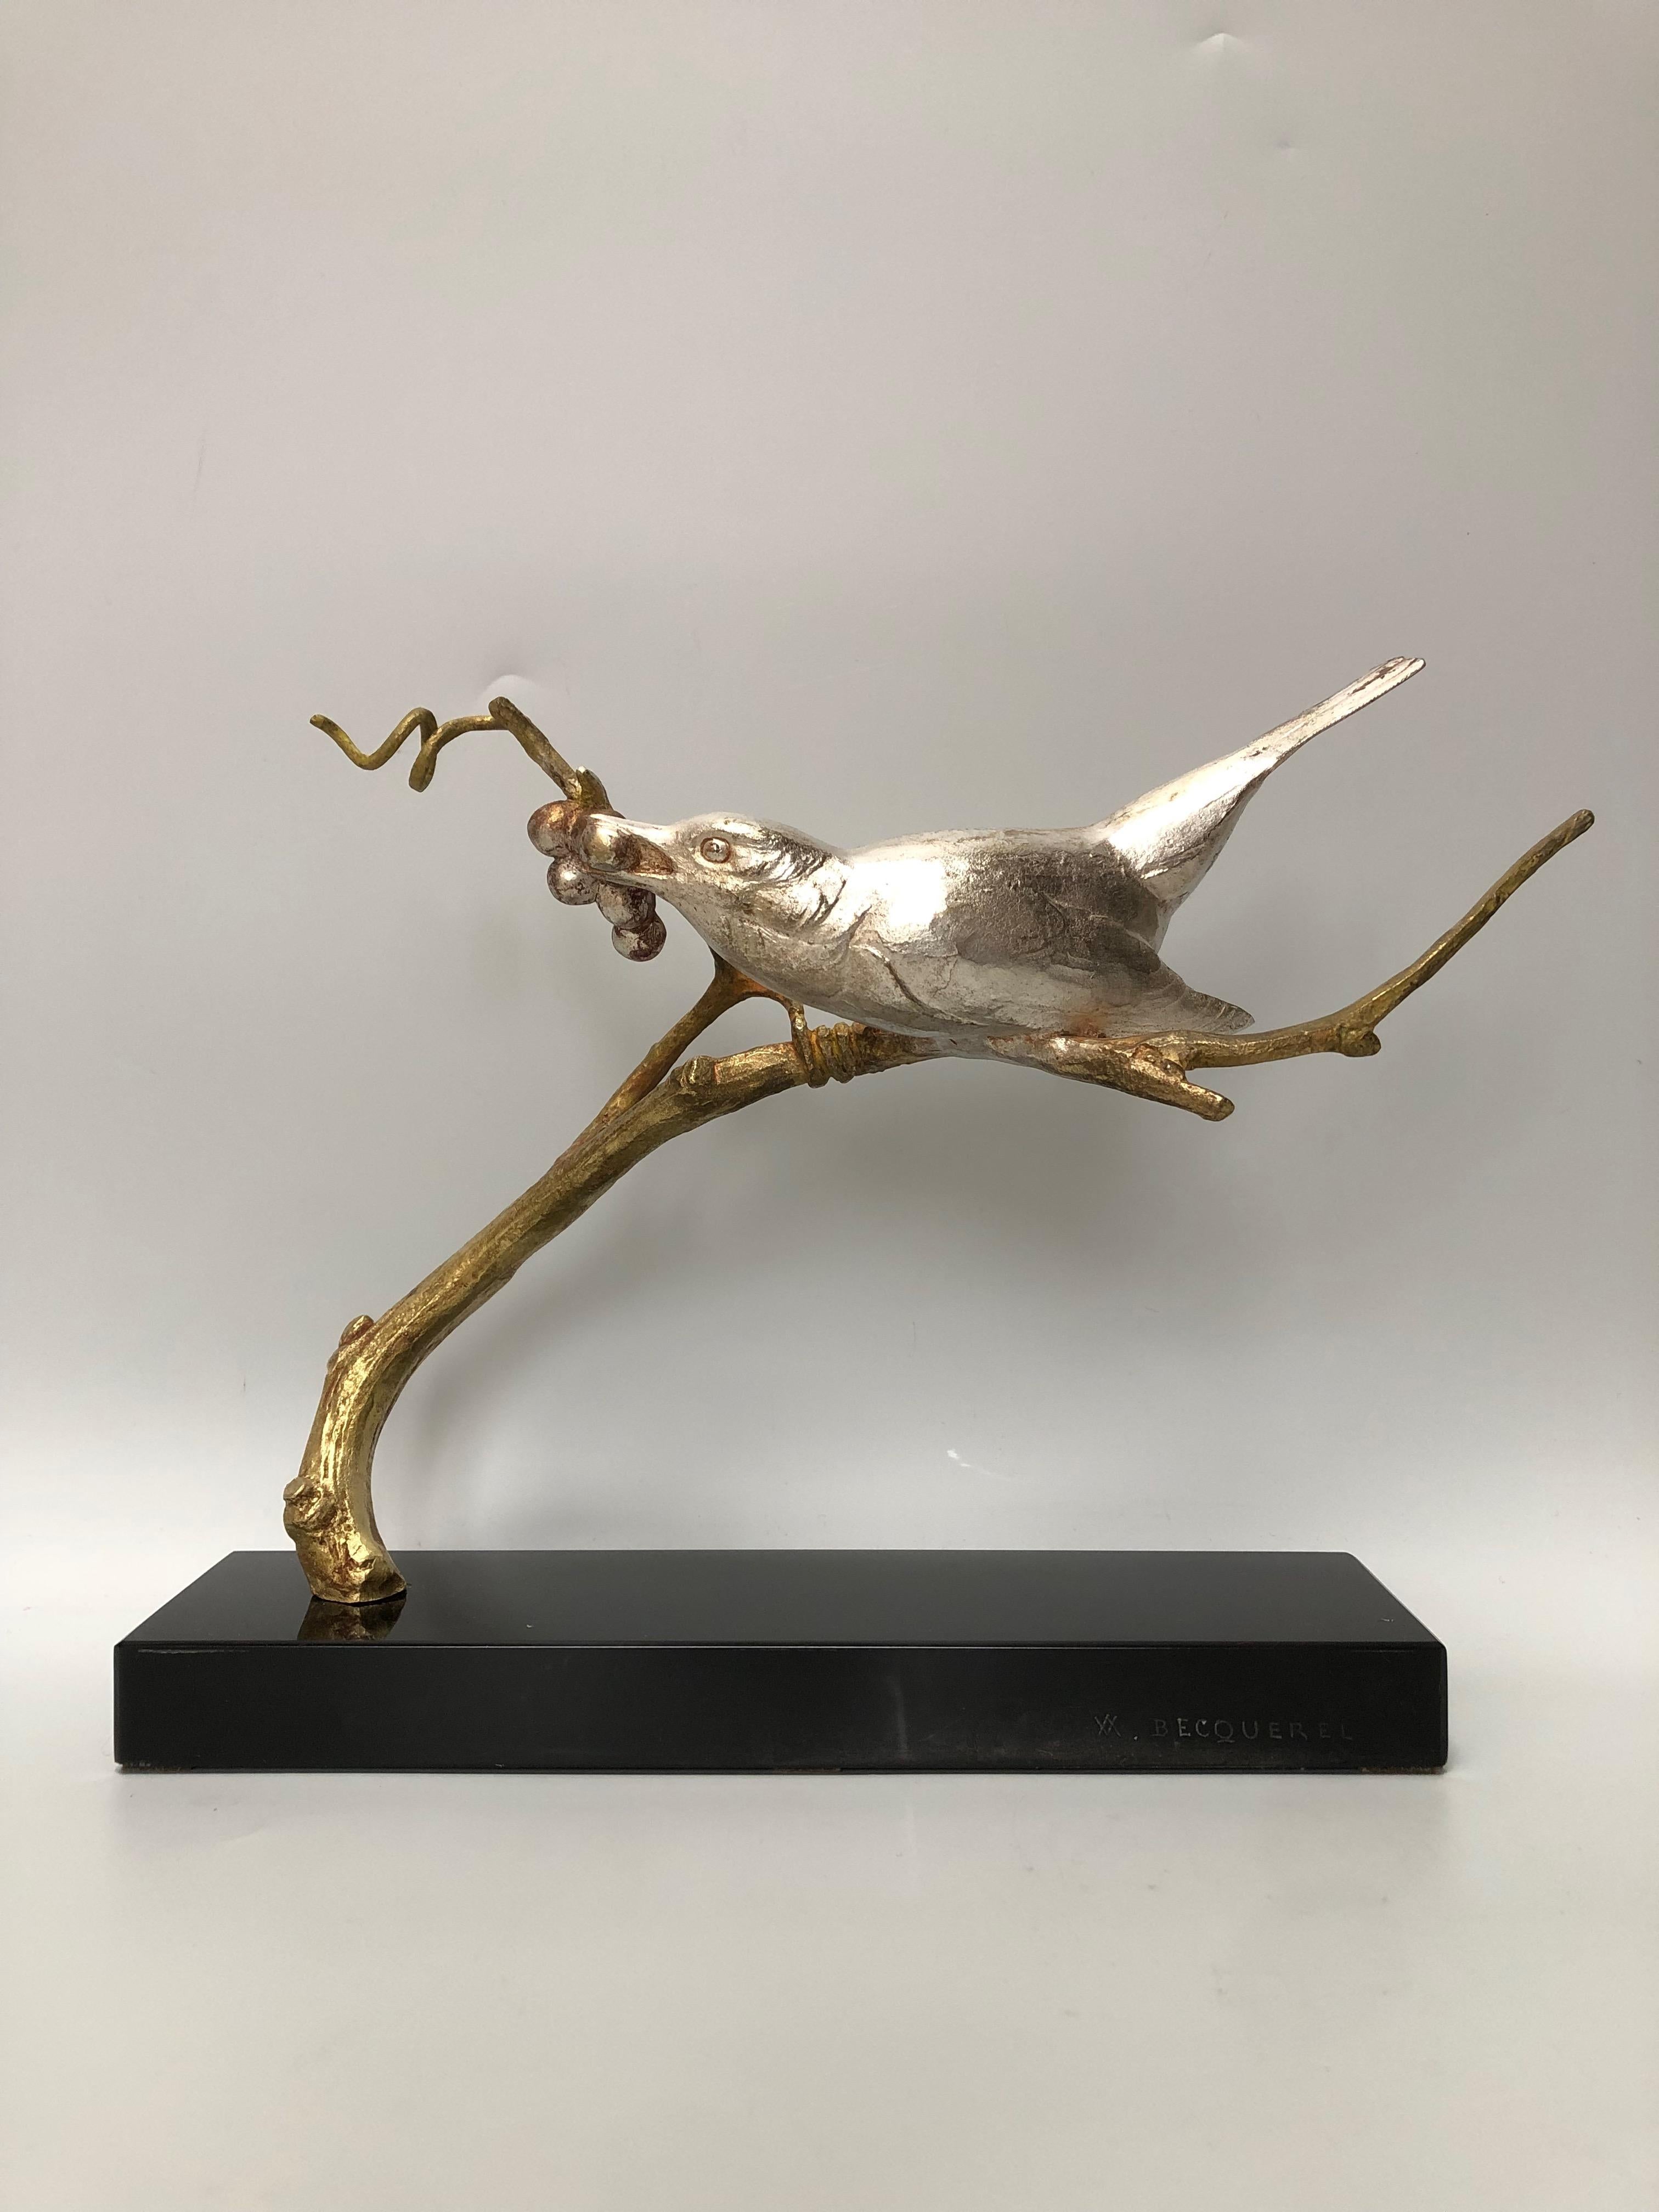 Art-Deco-Skulptur aus versilberter Bronze, Vogel auf einem Zweig mit Reben. Das Ganze steht auf einem schwarzen Marmorsockel (Surfin aus Belgien).
Signiert Bacquerel und gestempelt 